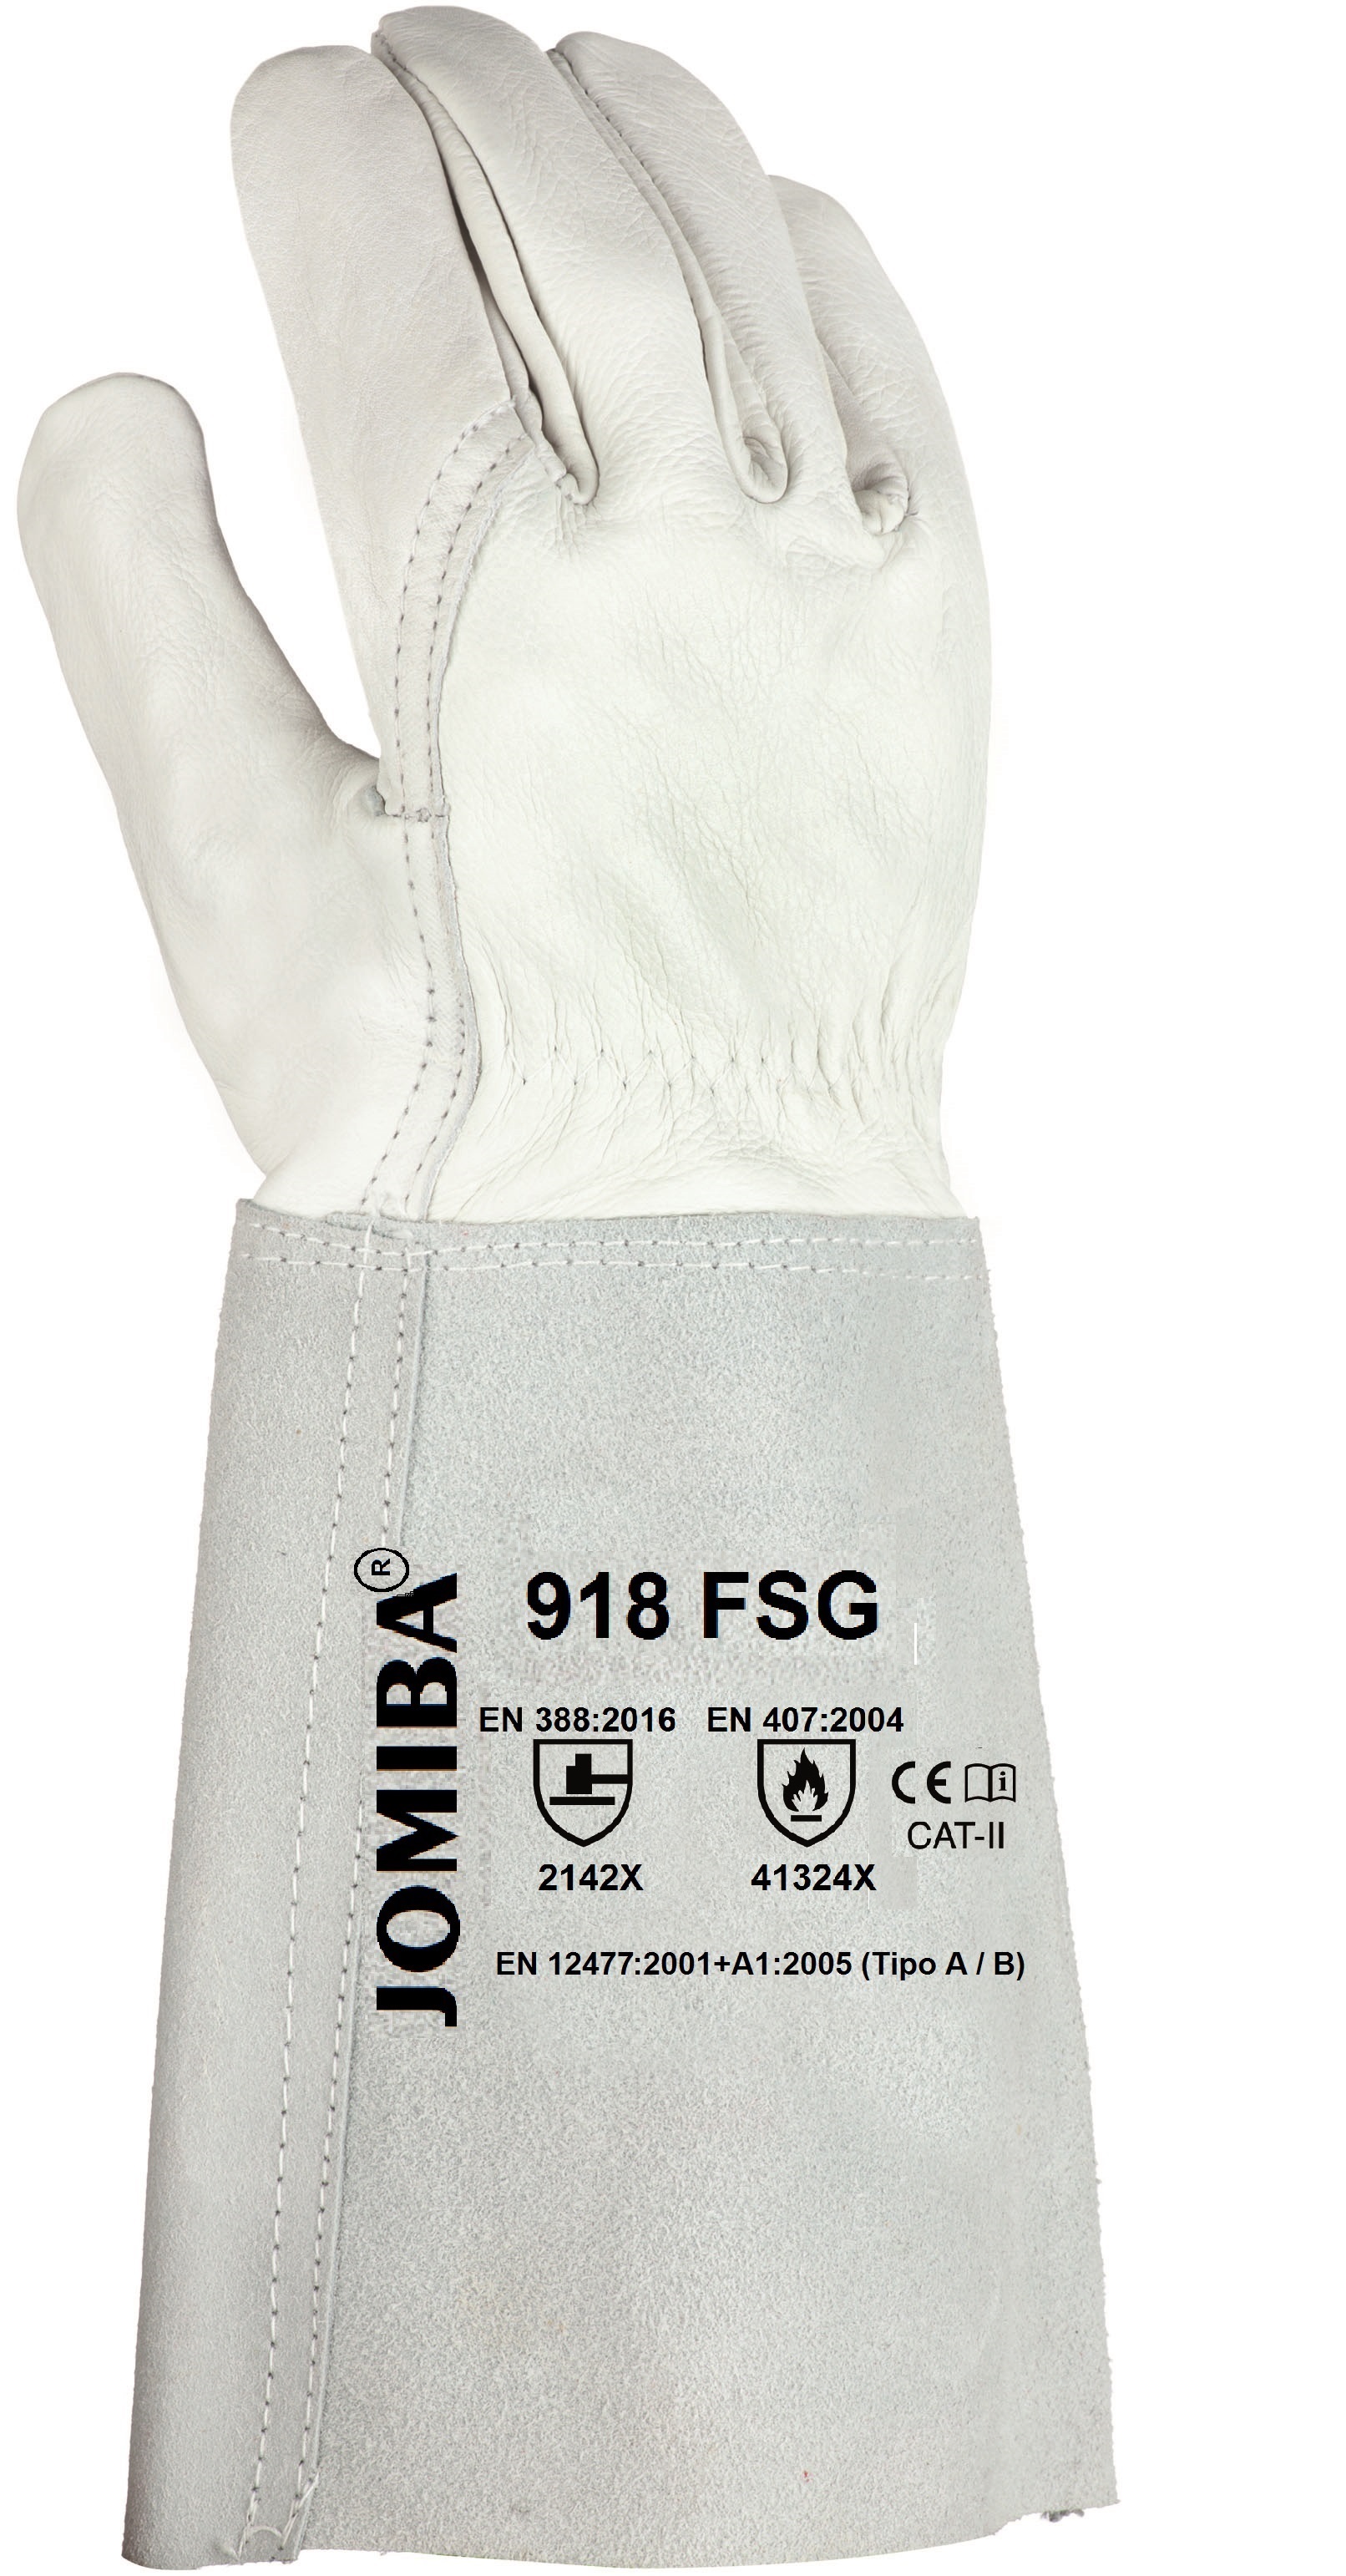 Dorso del producto 918 FSG